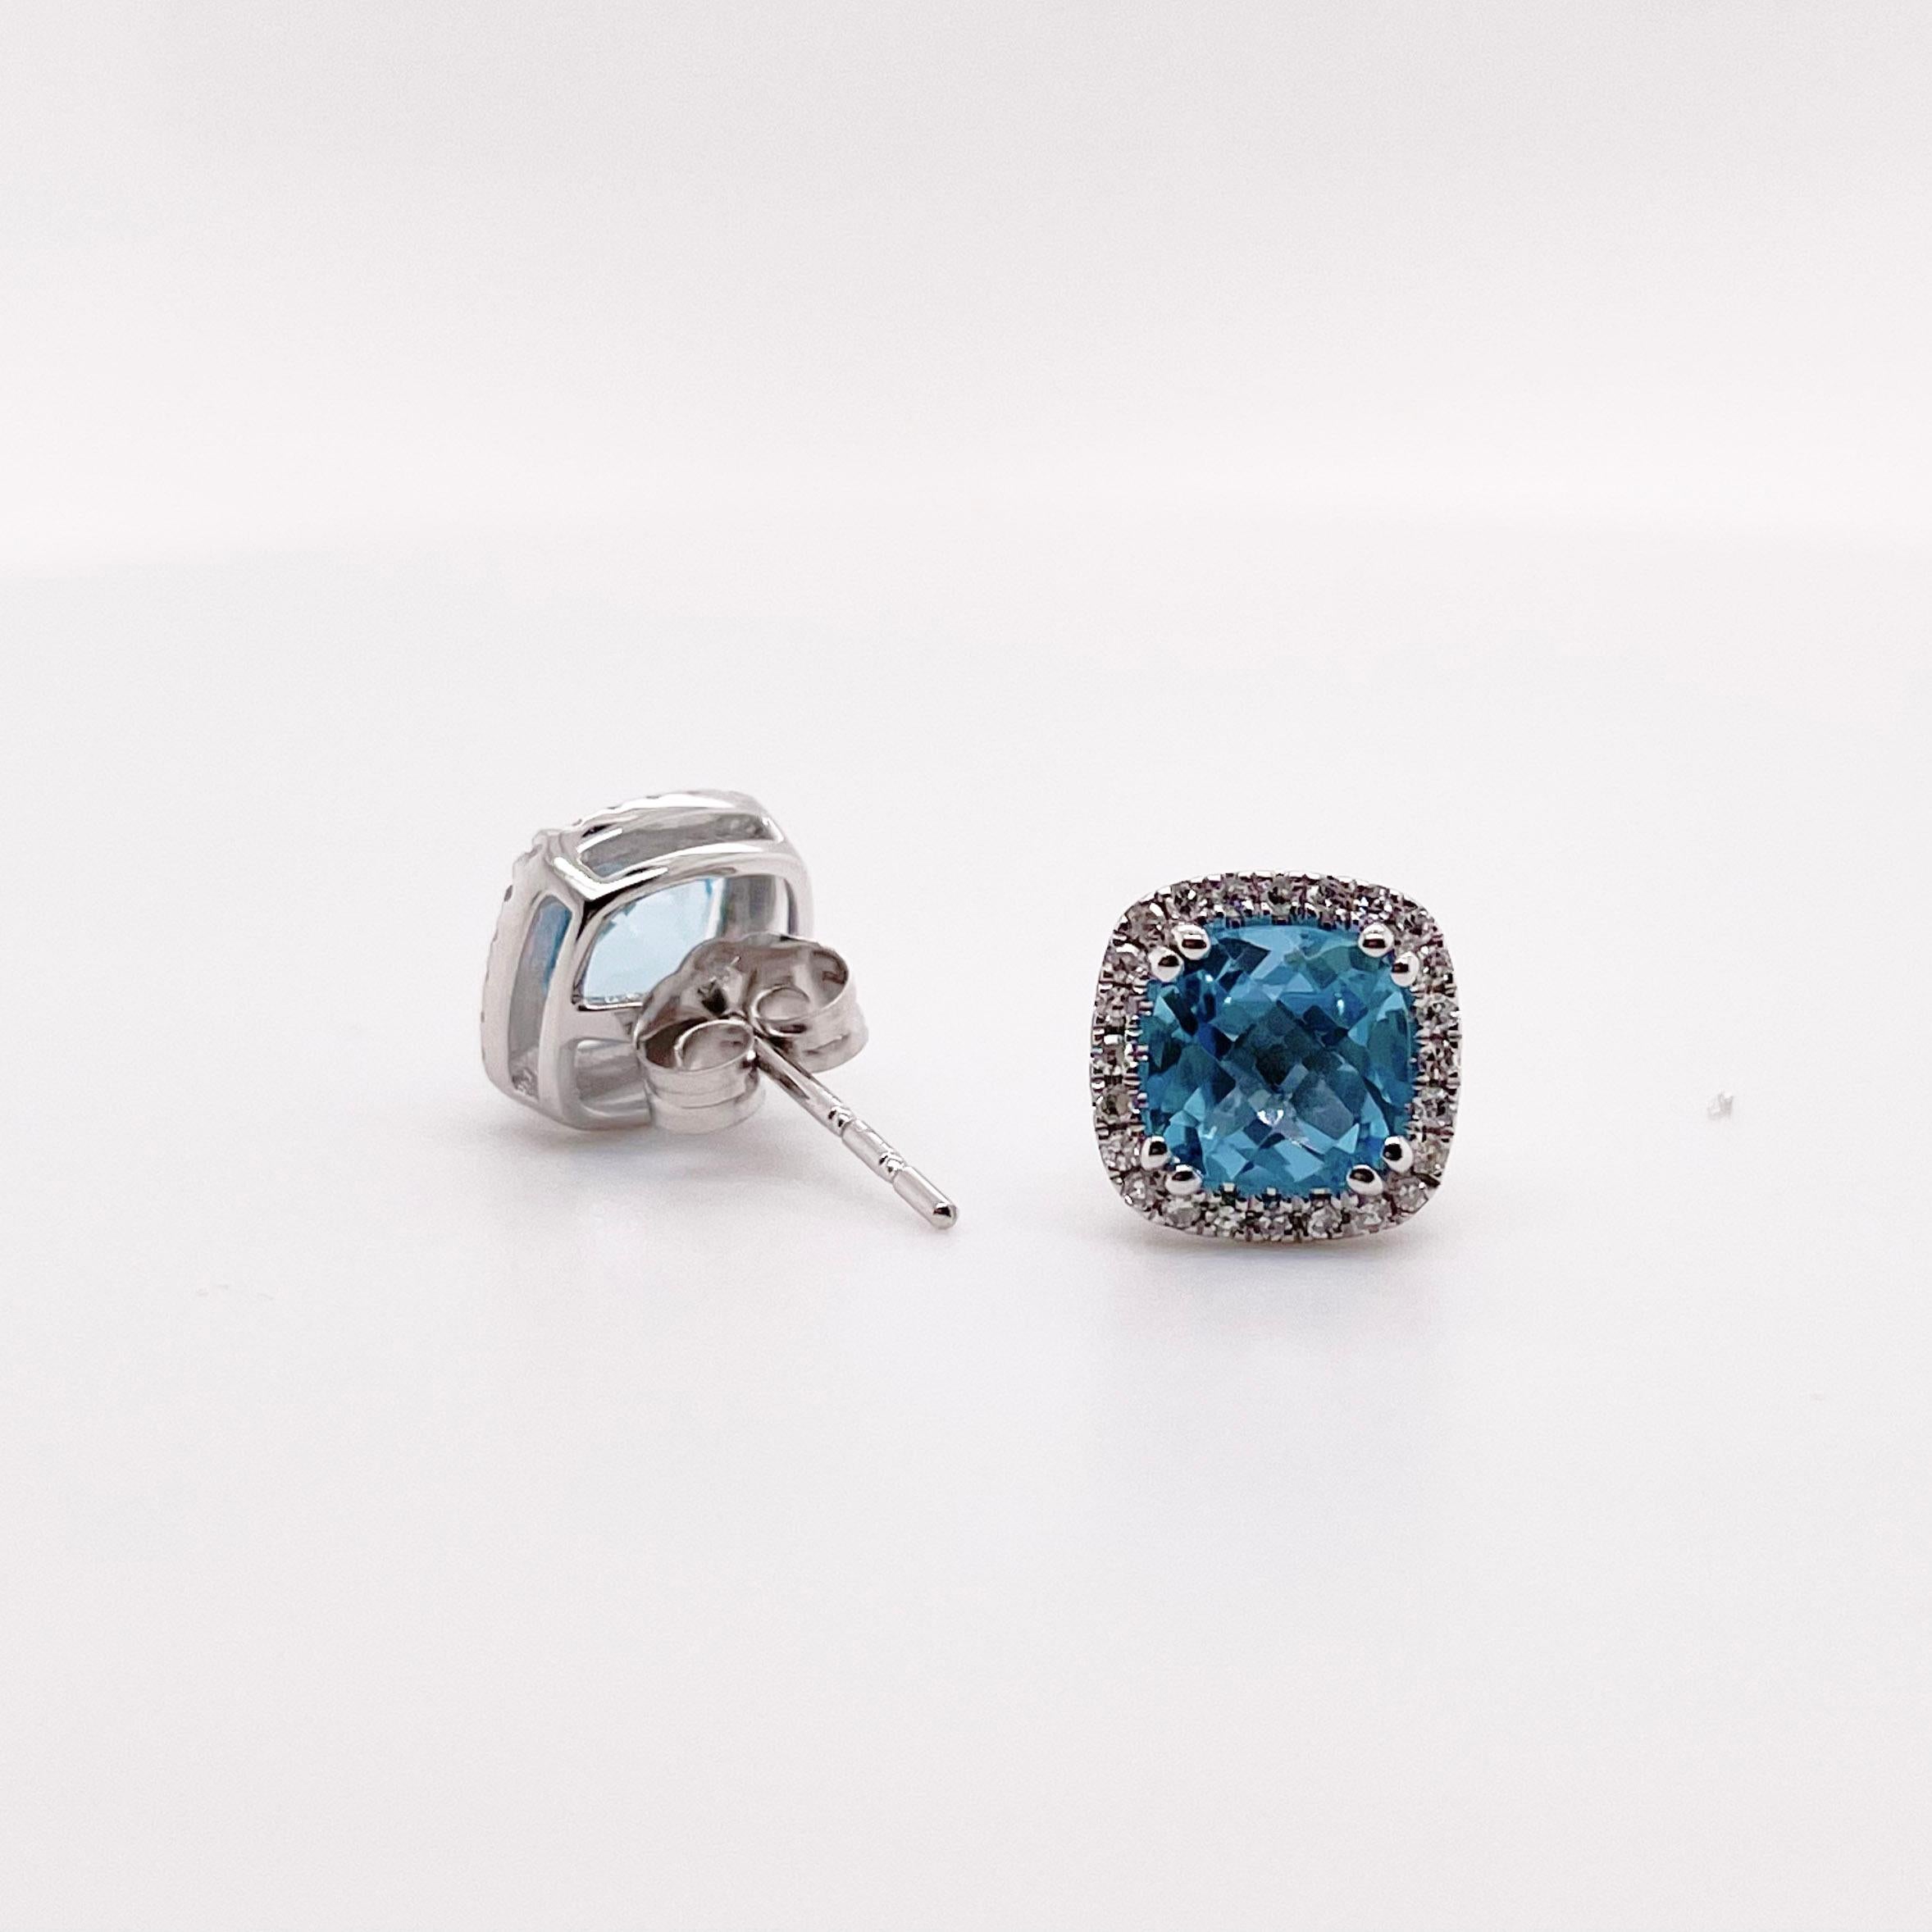 Diese wunderschönen Schweizer Blautopas-Ohrringe sind mit einem Halo aus Diamanten verziert.  Diese Ohrringe haben die perfekte Größe, um sie jeden Tag zu tragen! Schweizer Blau ist die beliebteste Farbe für Topas, da sie mit jedem Haar einen